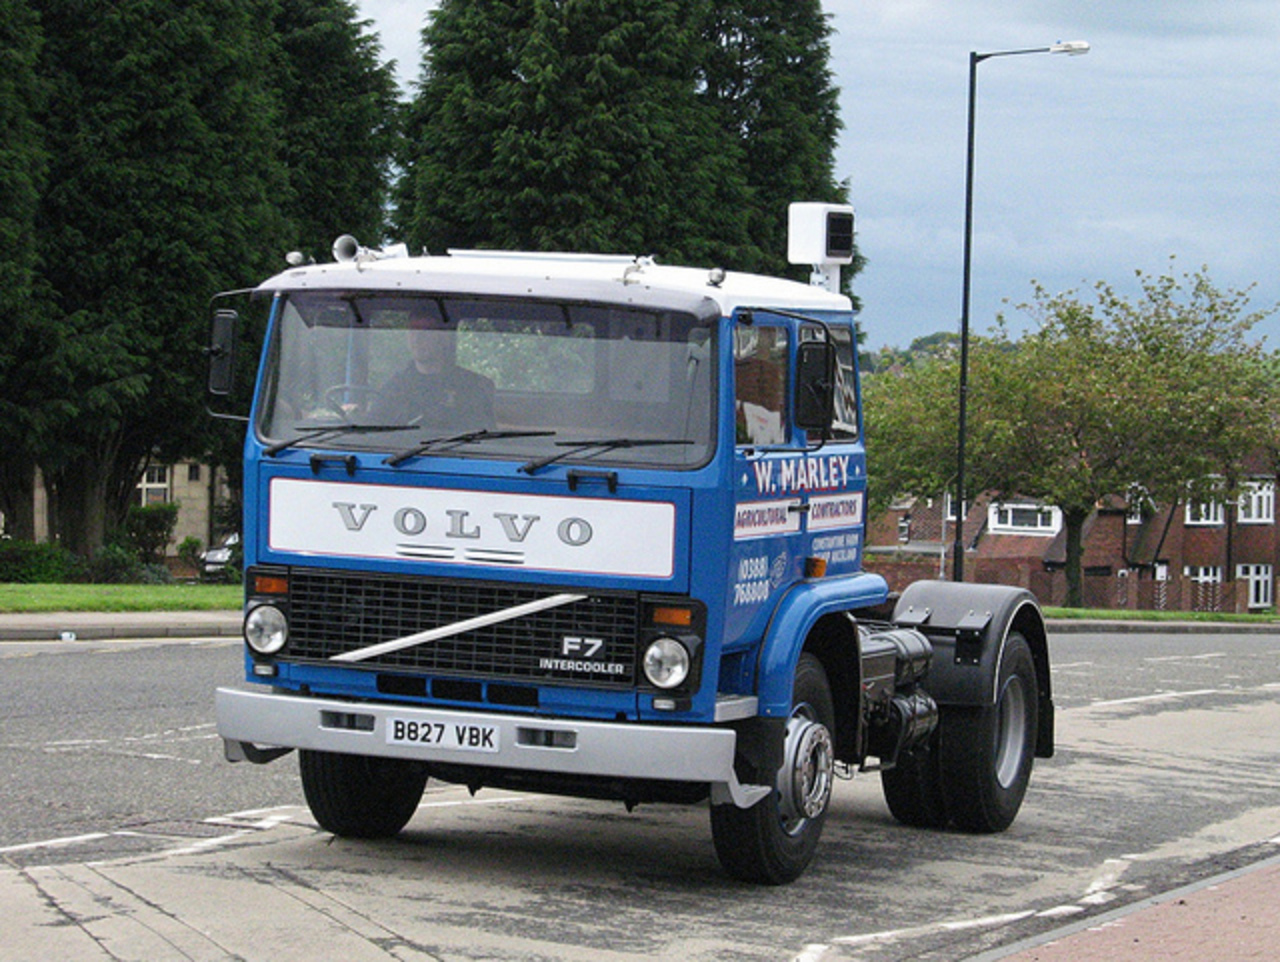 1984 Volvo F7 Intercooler | Flickr - Photo Sharing!